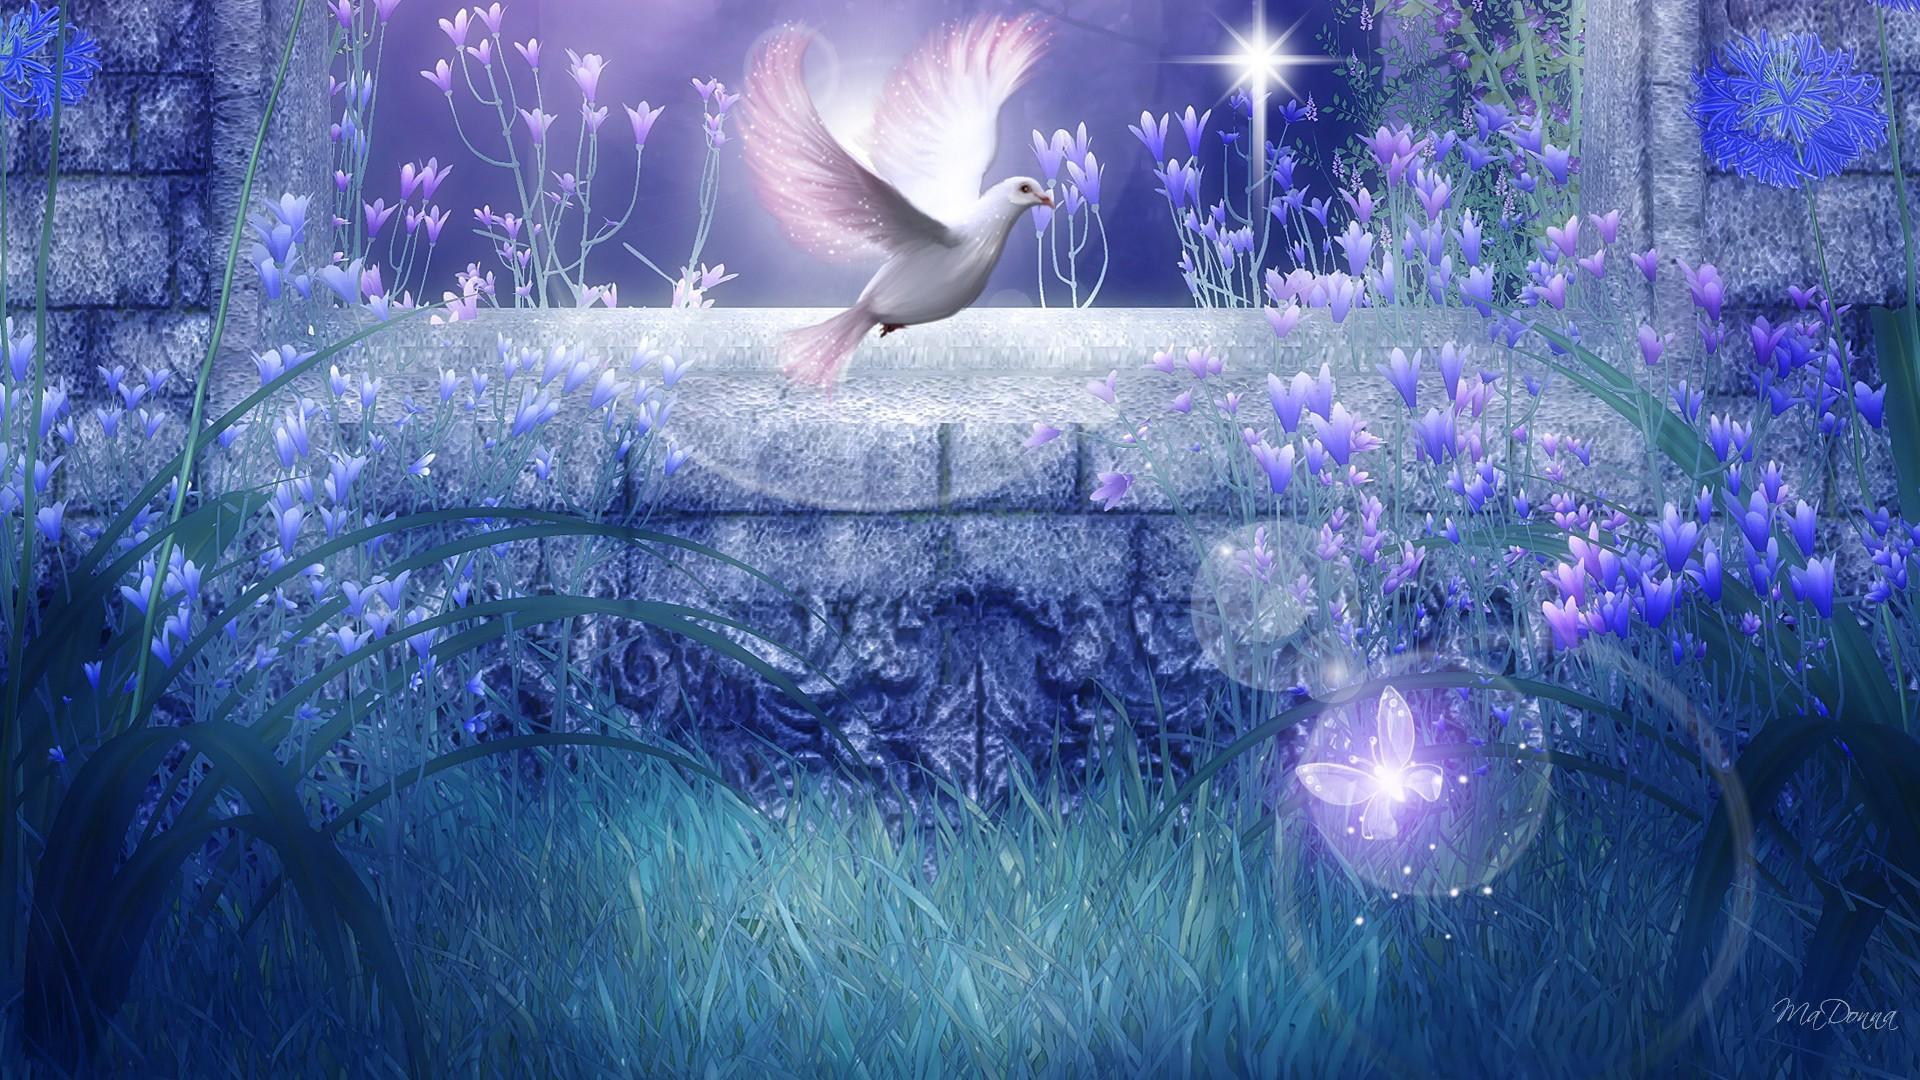 Peaceful Dove HD desktop wallpaper, Widescreen, High Definition